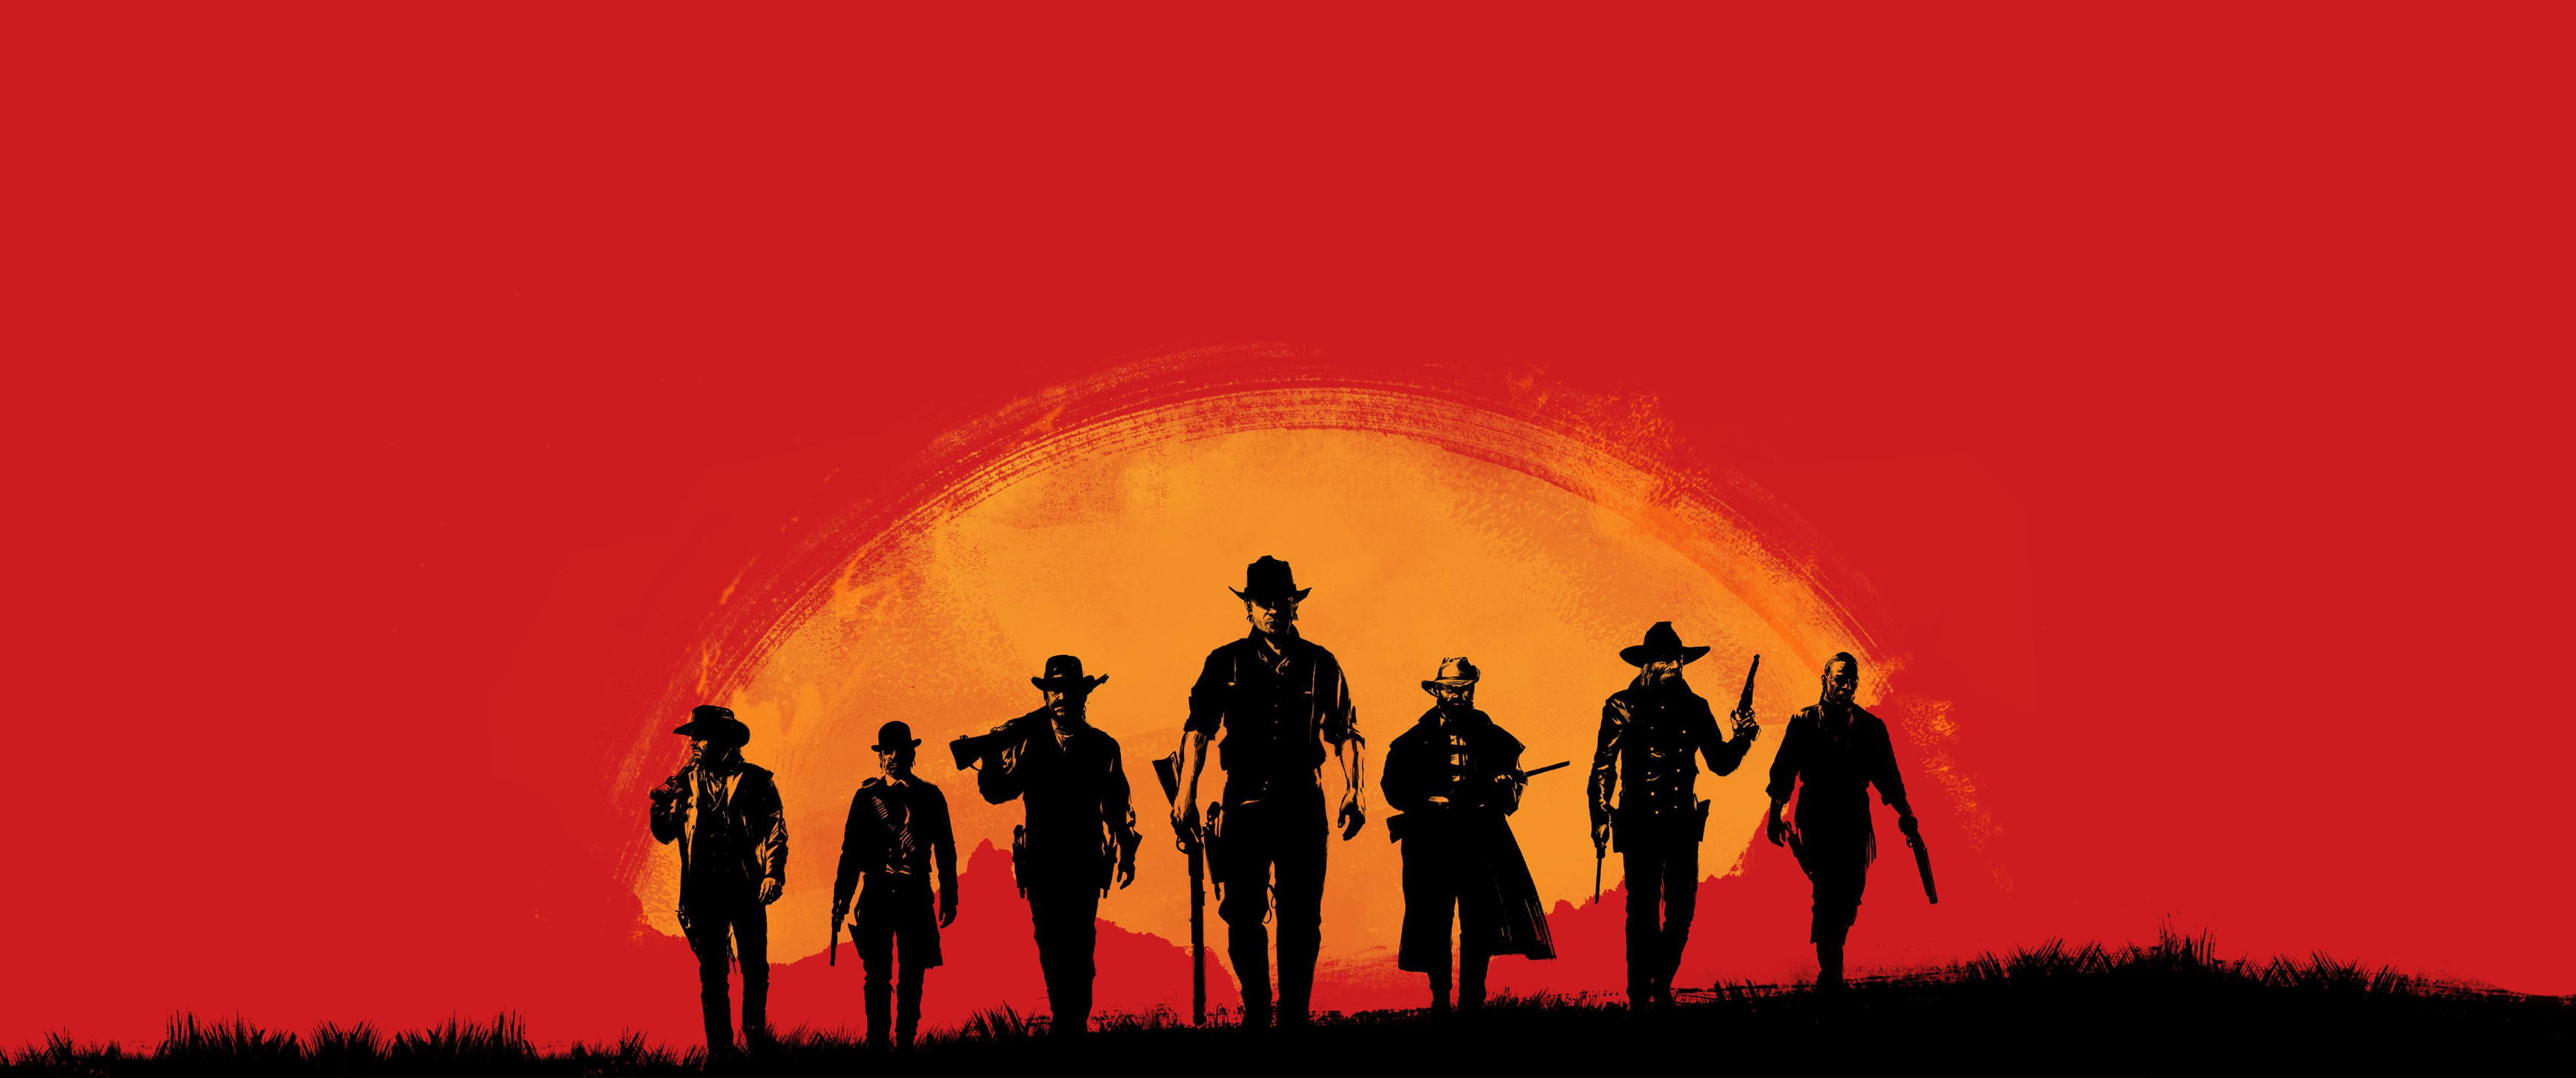 Red Dead Redemption 2 Ultrawide - HD Wallpaper 